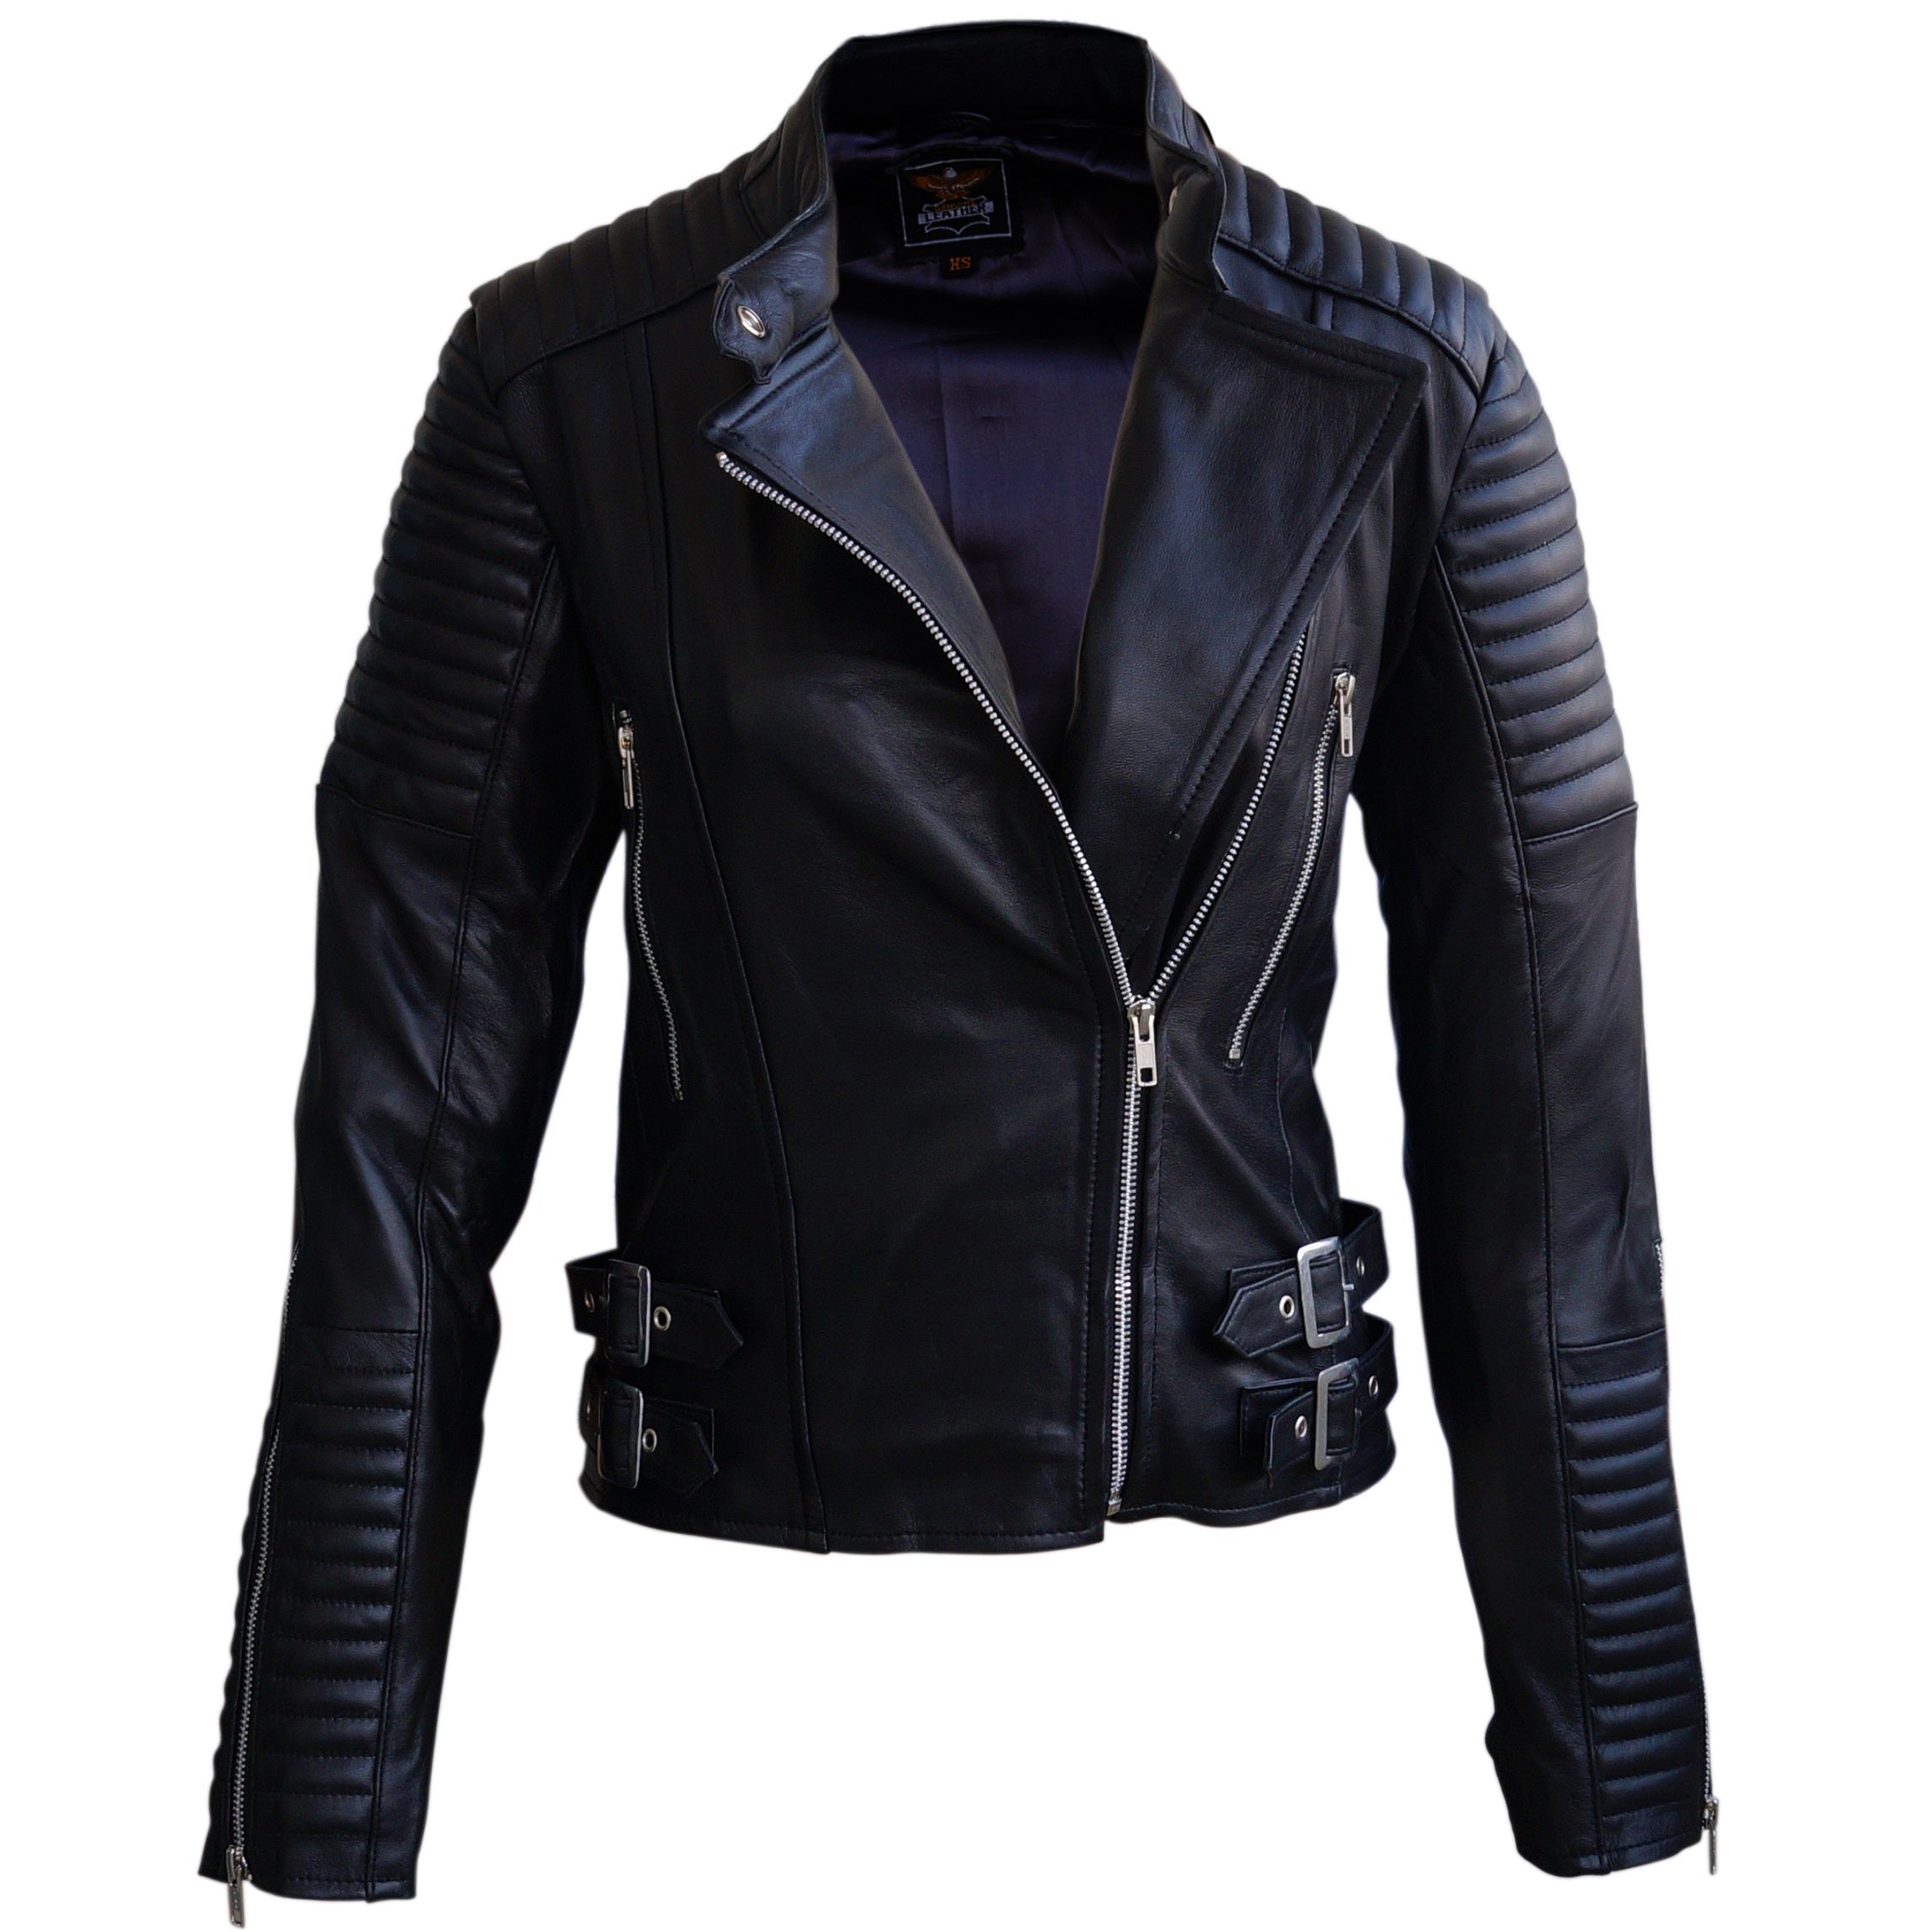 Leather Skin Black Motorcycle Biker Racing Premium Genuine Leather Jacket